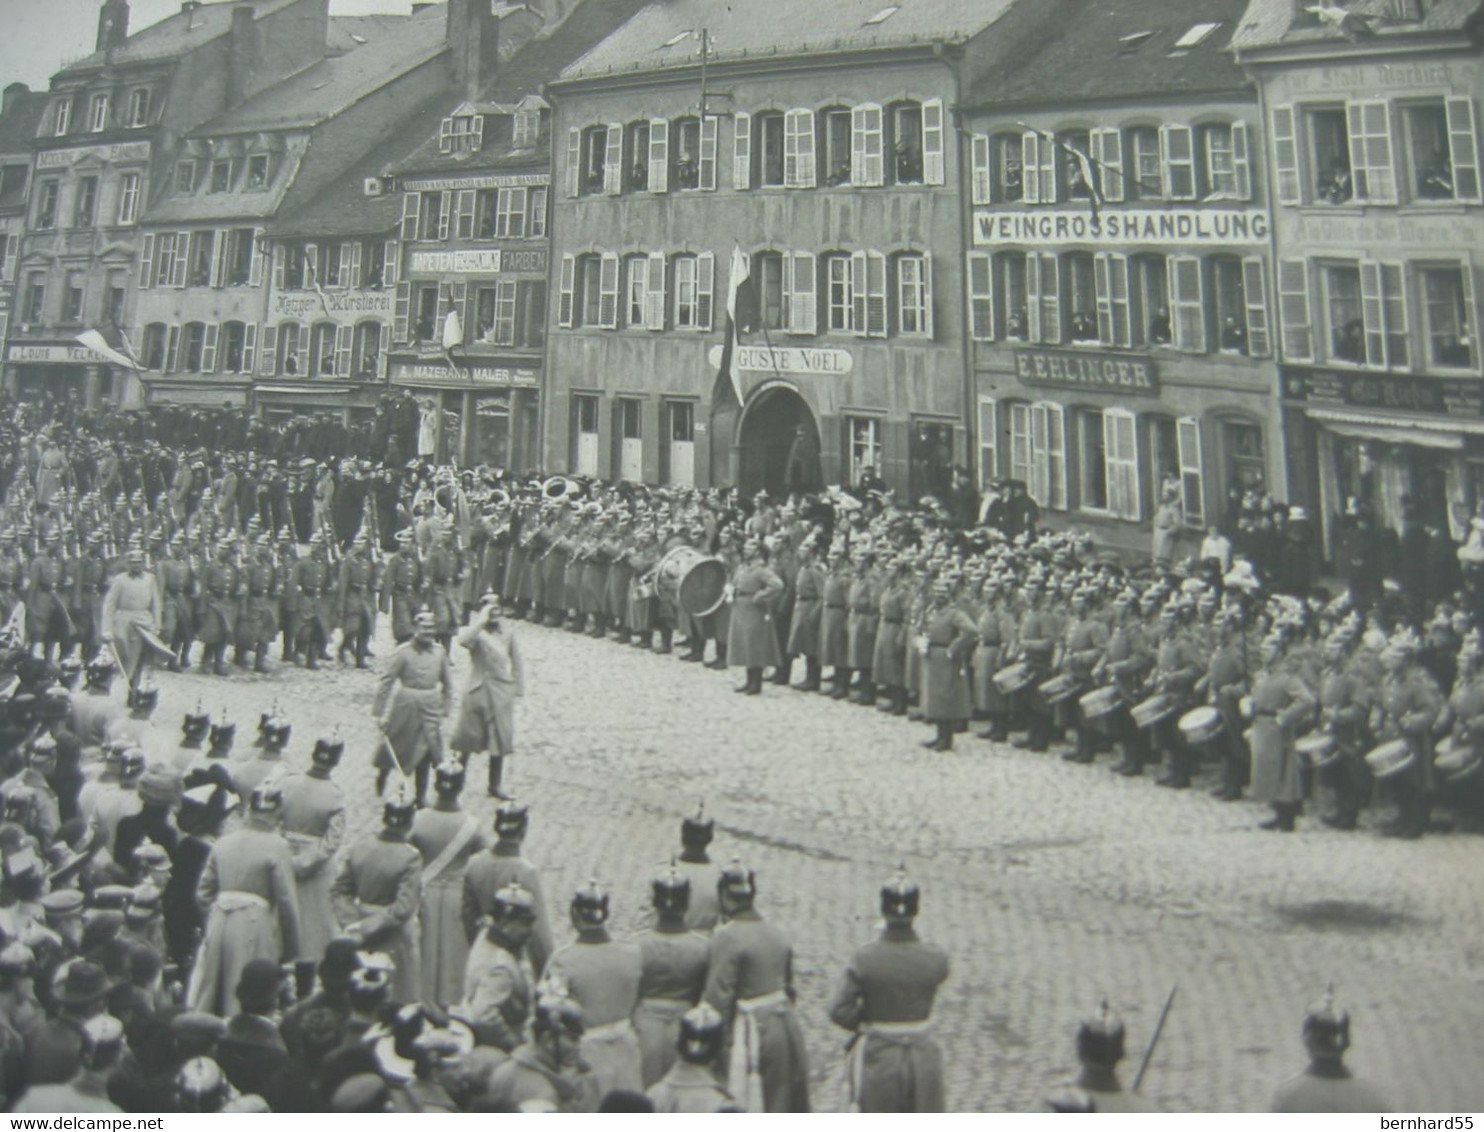 Nr. 89 Foto Ak Sarrebourg Saarburg Post. Gel. 24.9.17 Schwarz/weiß Weingrosshandlung Militärparade - Sarrebourg